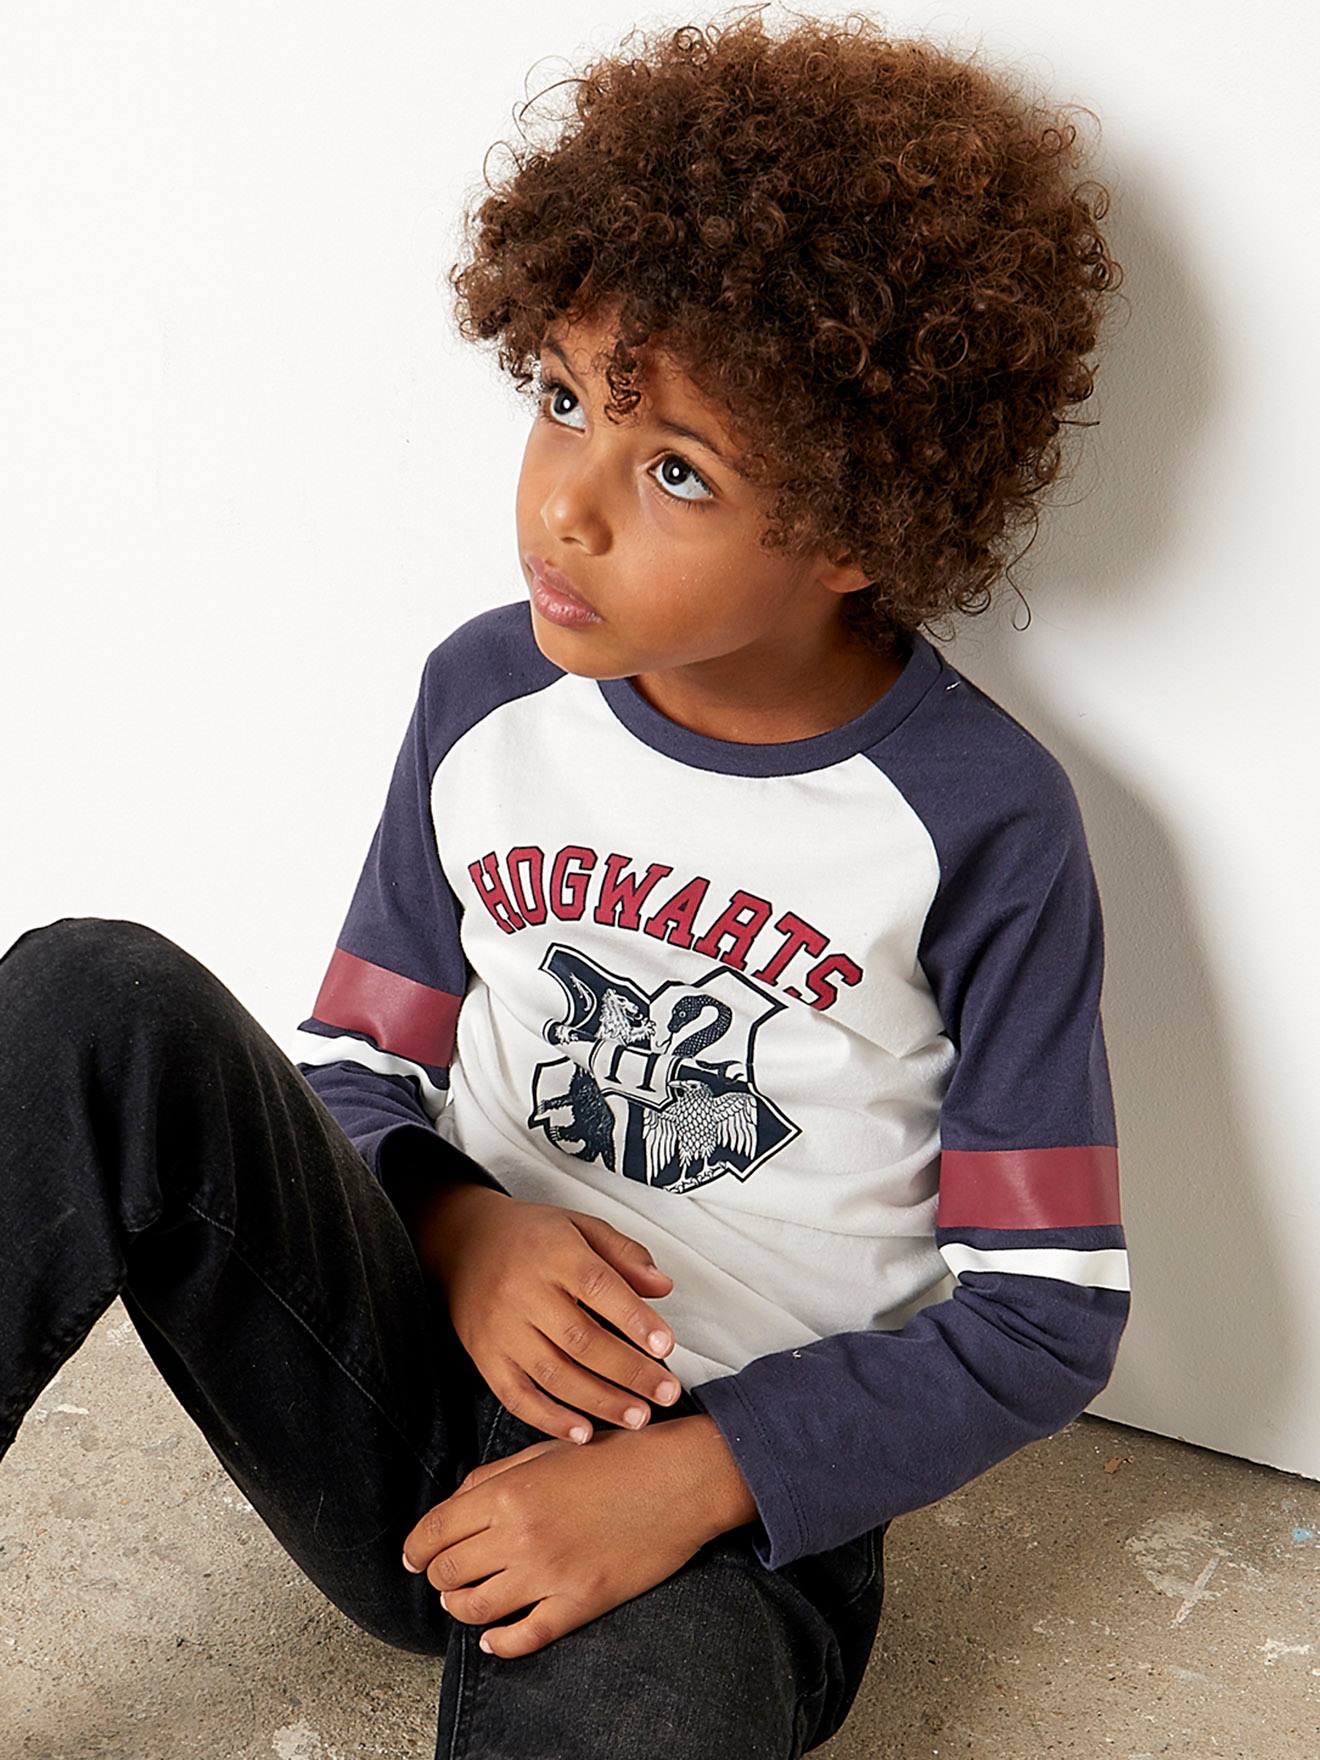 omhelzing Ijsbeer gereedschap Harry Potter® T-shirt met lange mouwen voor jongens - wit/blauw/bordeaux,  Jongens